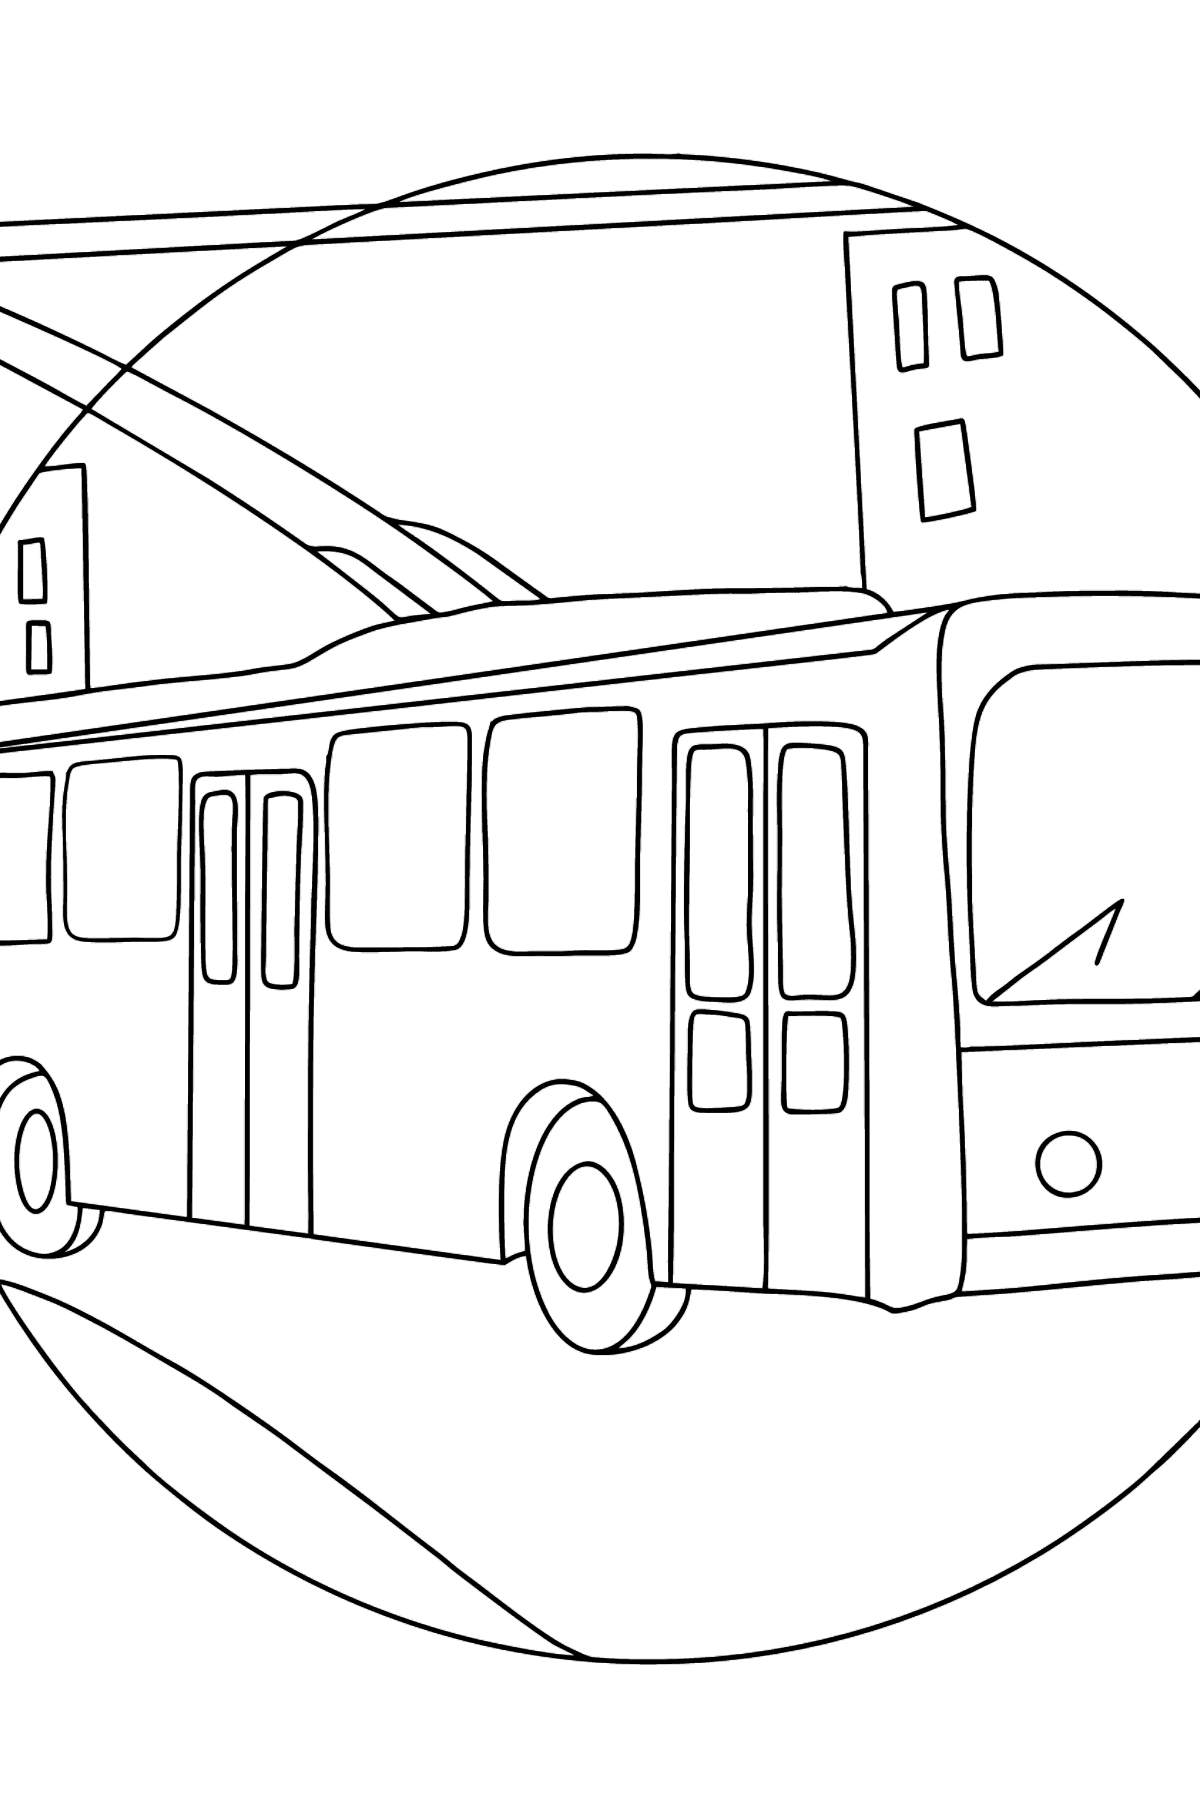 Kleurplaat trolleybus - kleurplaten voor kinderen